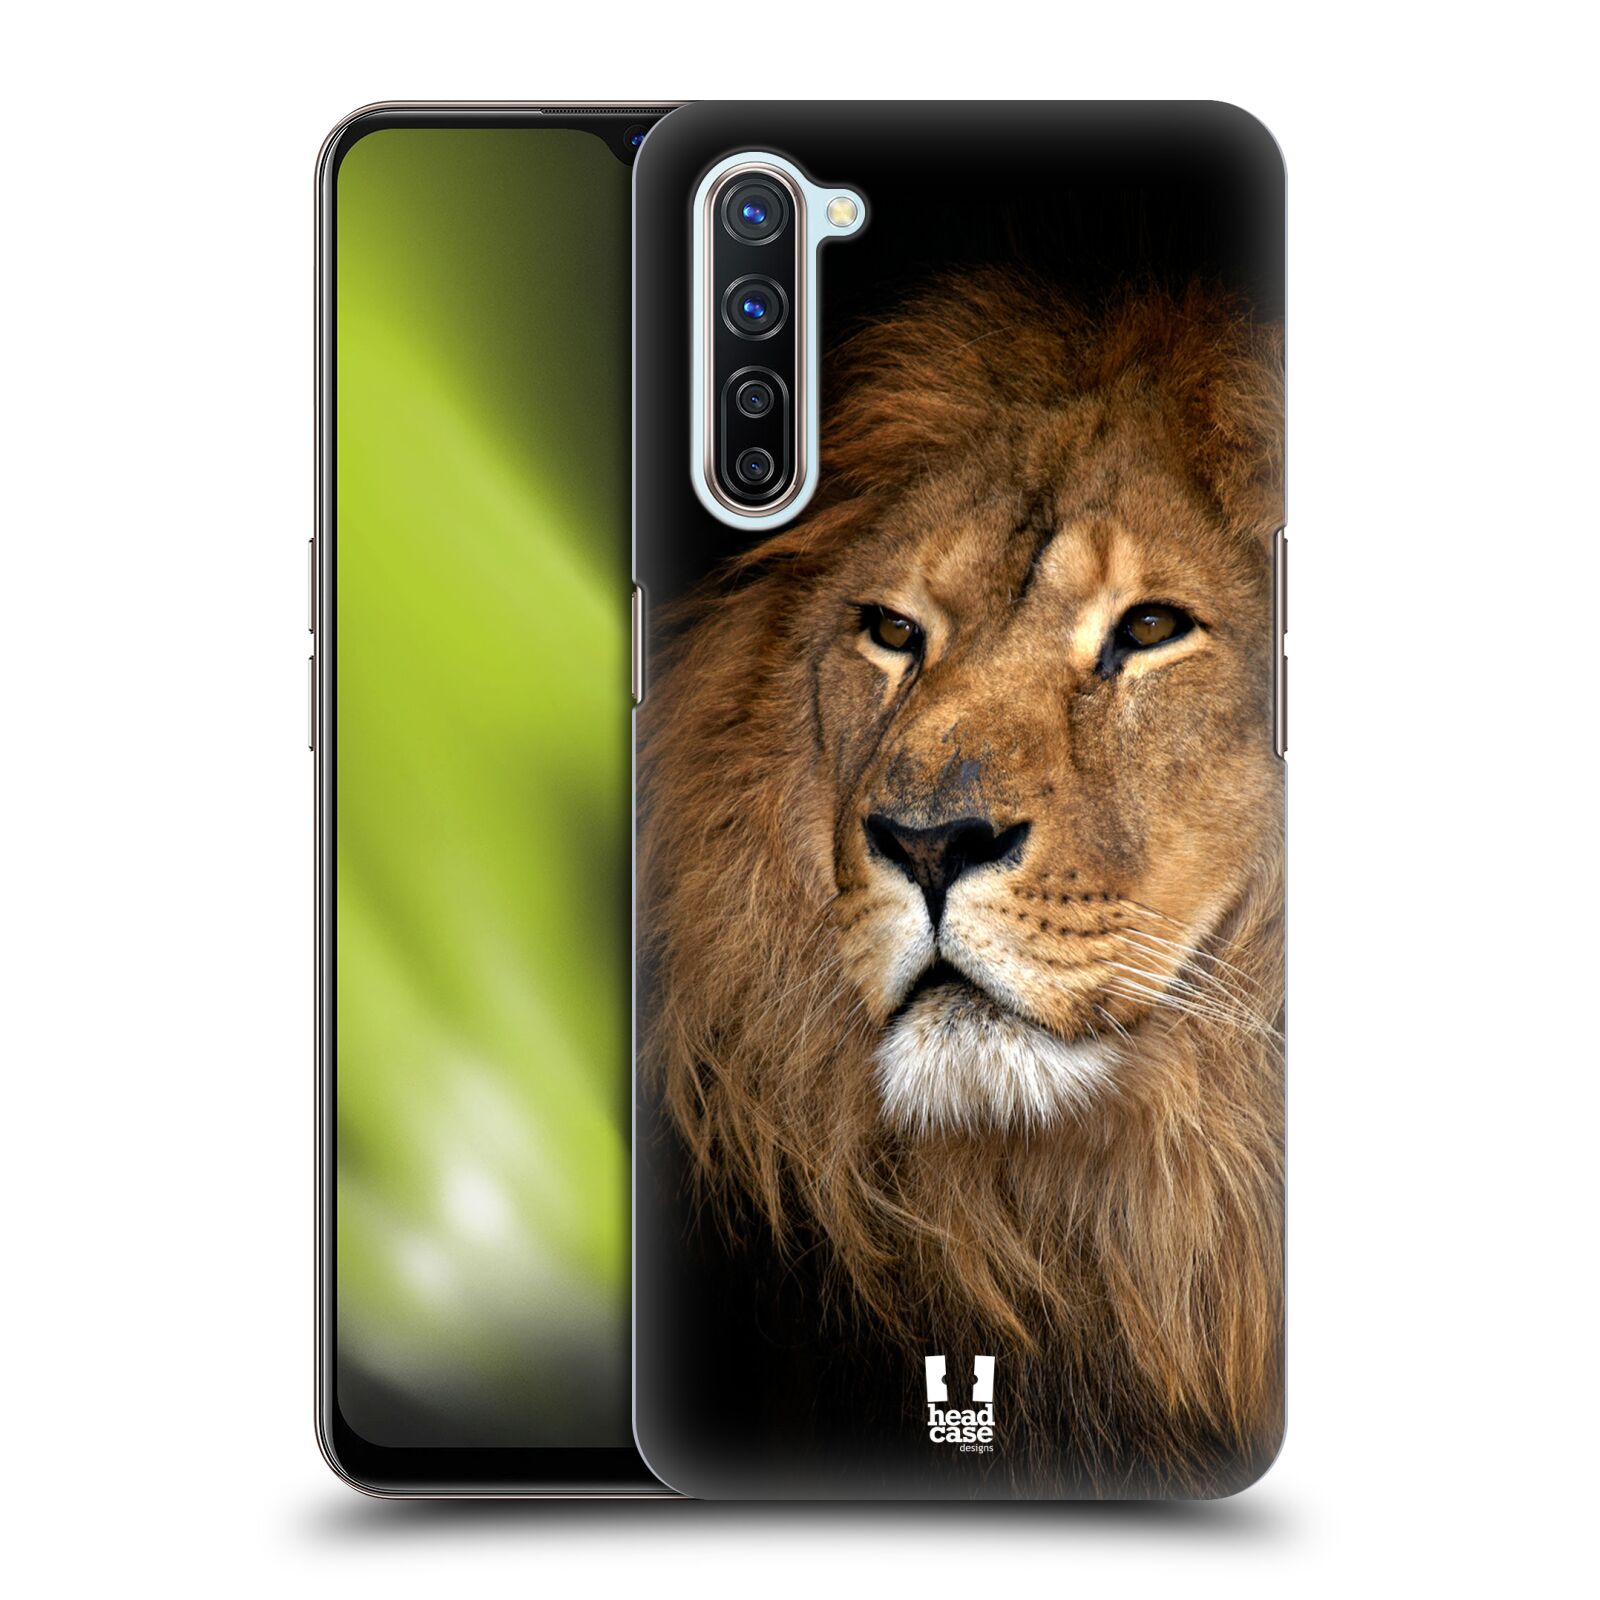 Zadní obal pro mobil Oppo Find X2 LITE - HEAD CASE - Svět zvířat král zvířat Lev